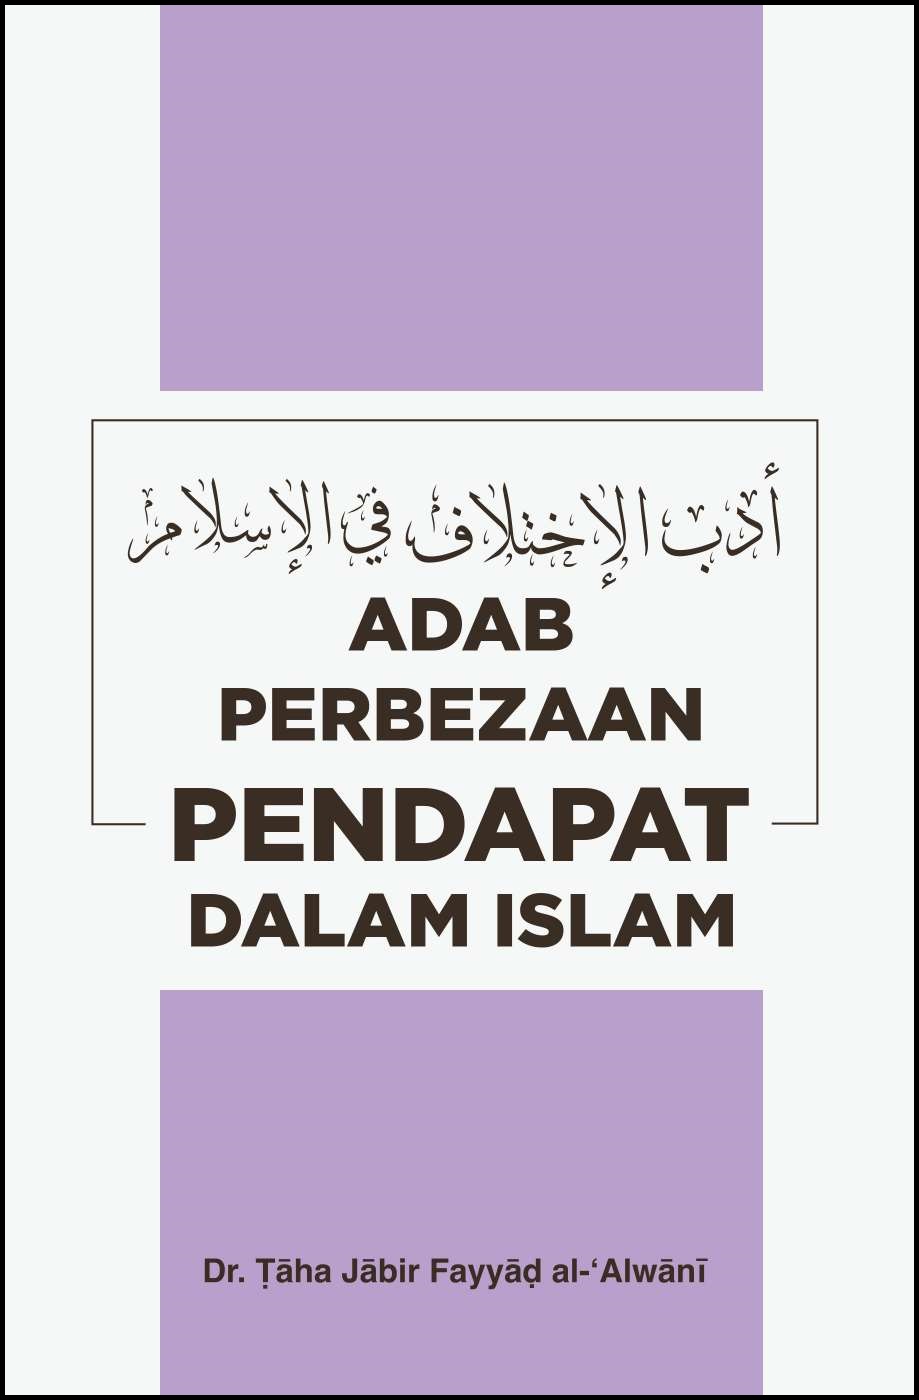 Malay: Adab Perbezaan Pendapat Tidak Boleh Dijual (The Ethics of Disagreement in Islam)